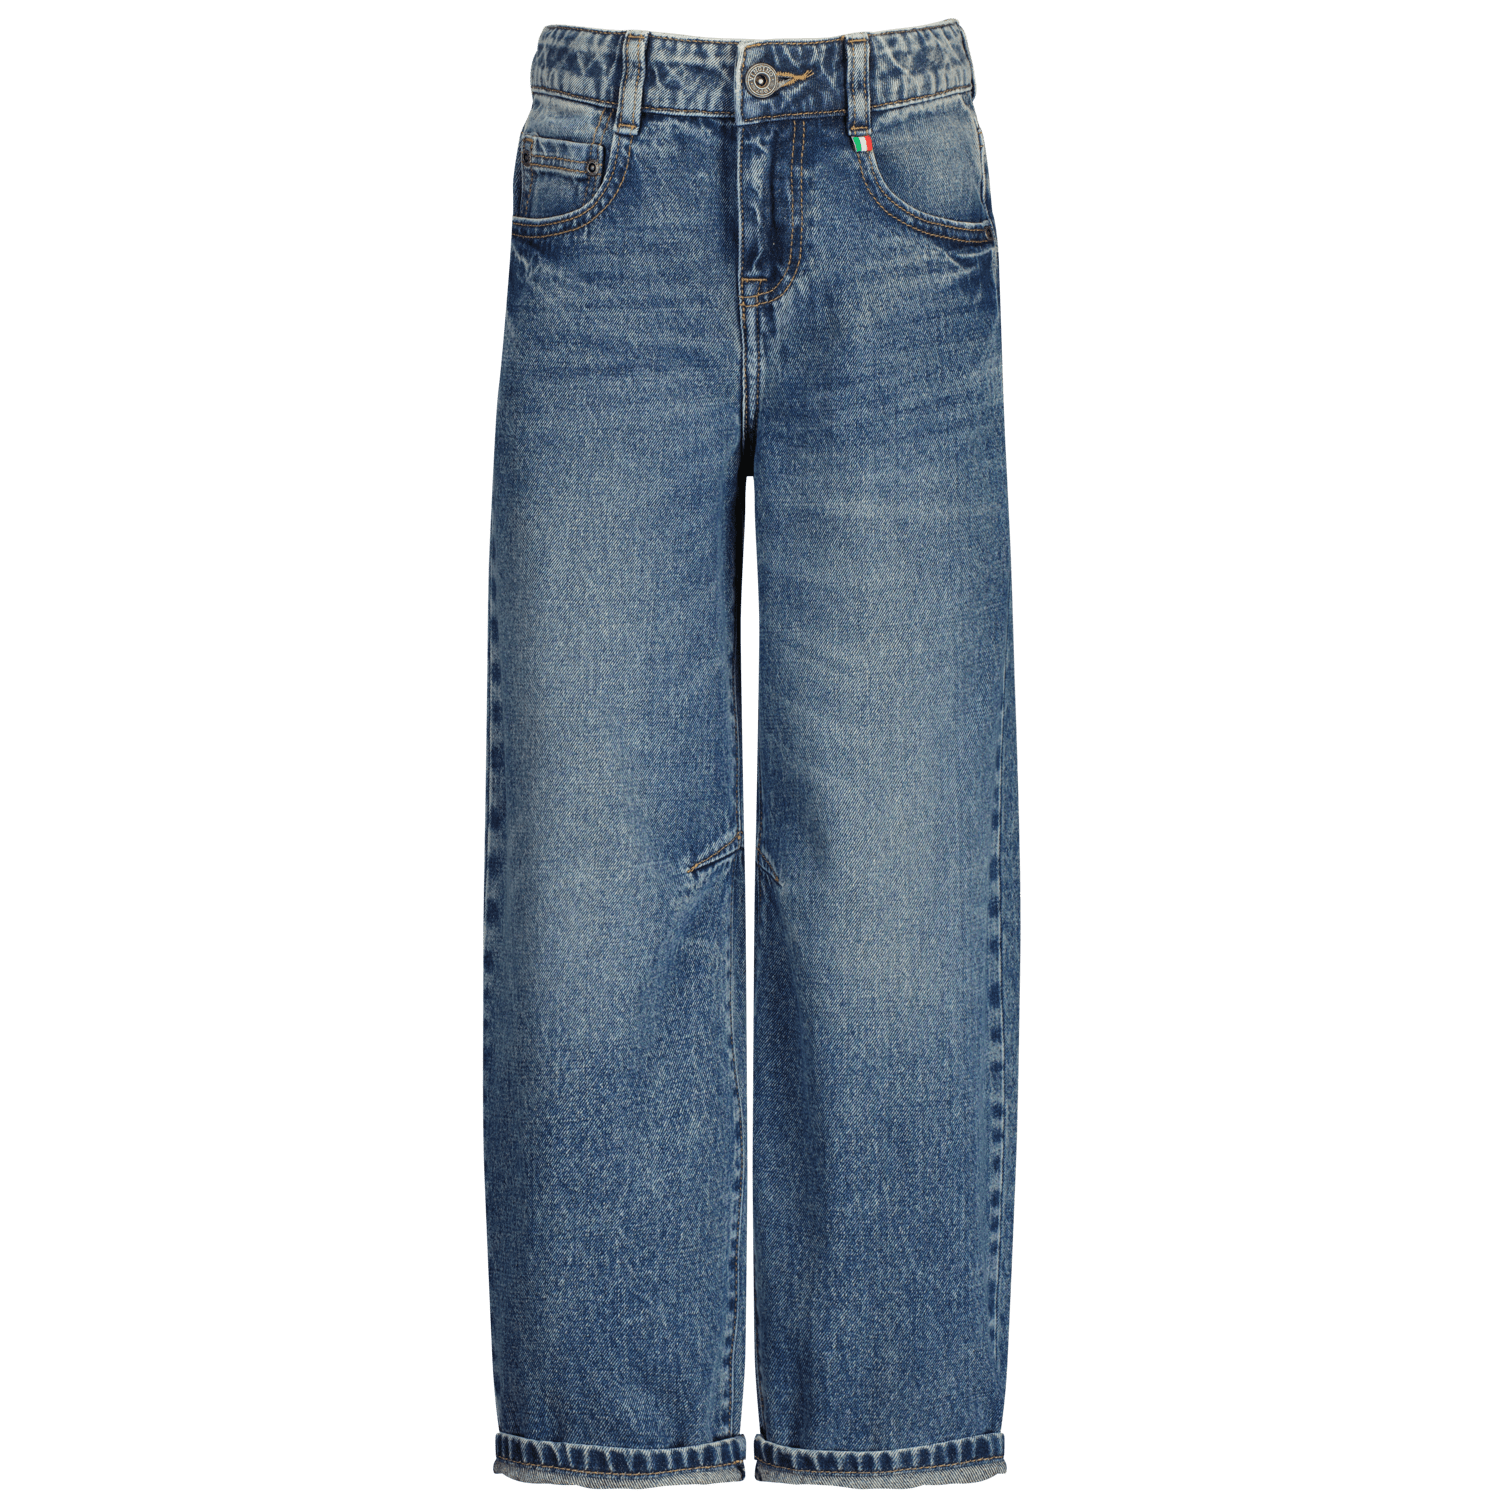 VINGINO loose fit jeans Valente indigo blue Blauw Denim 140